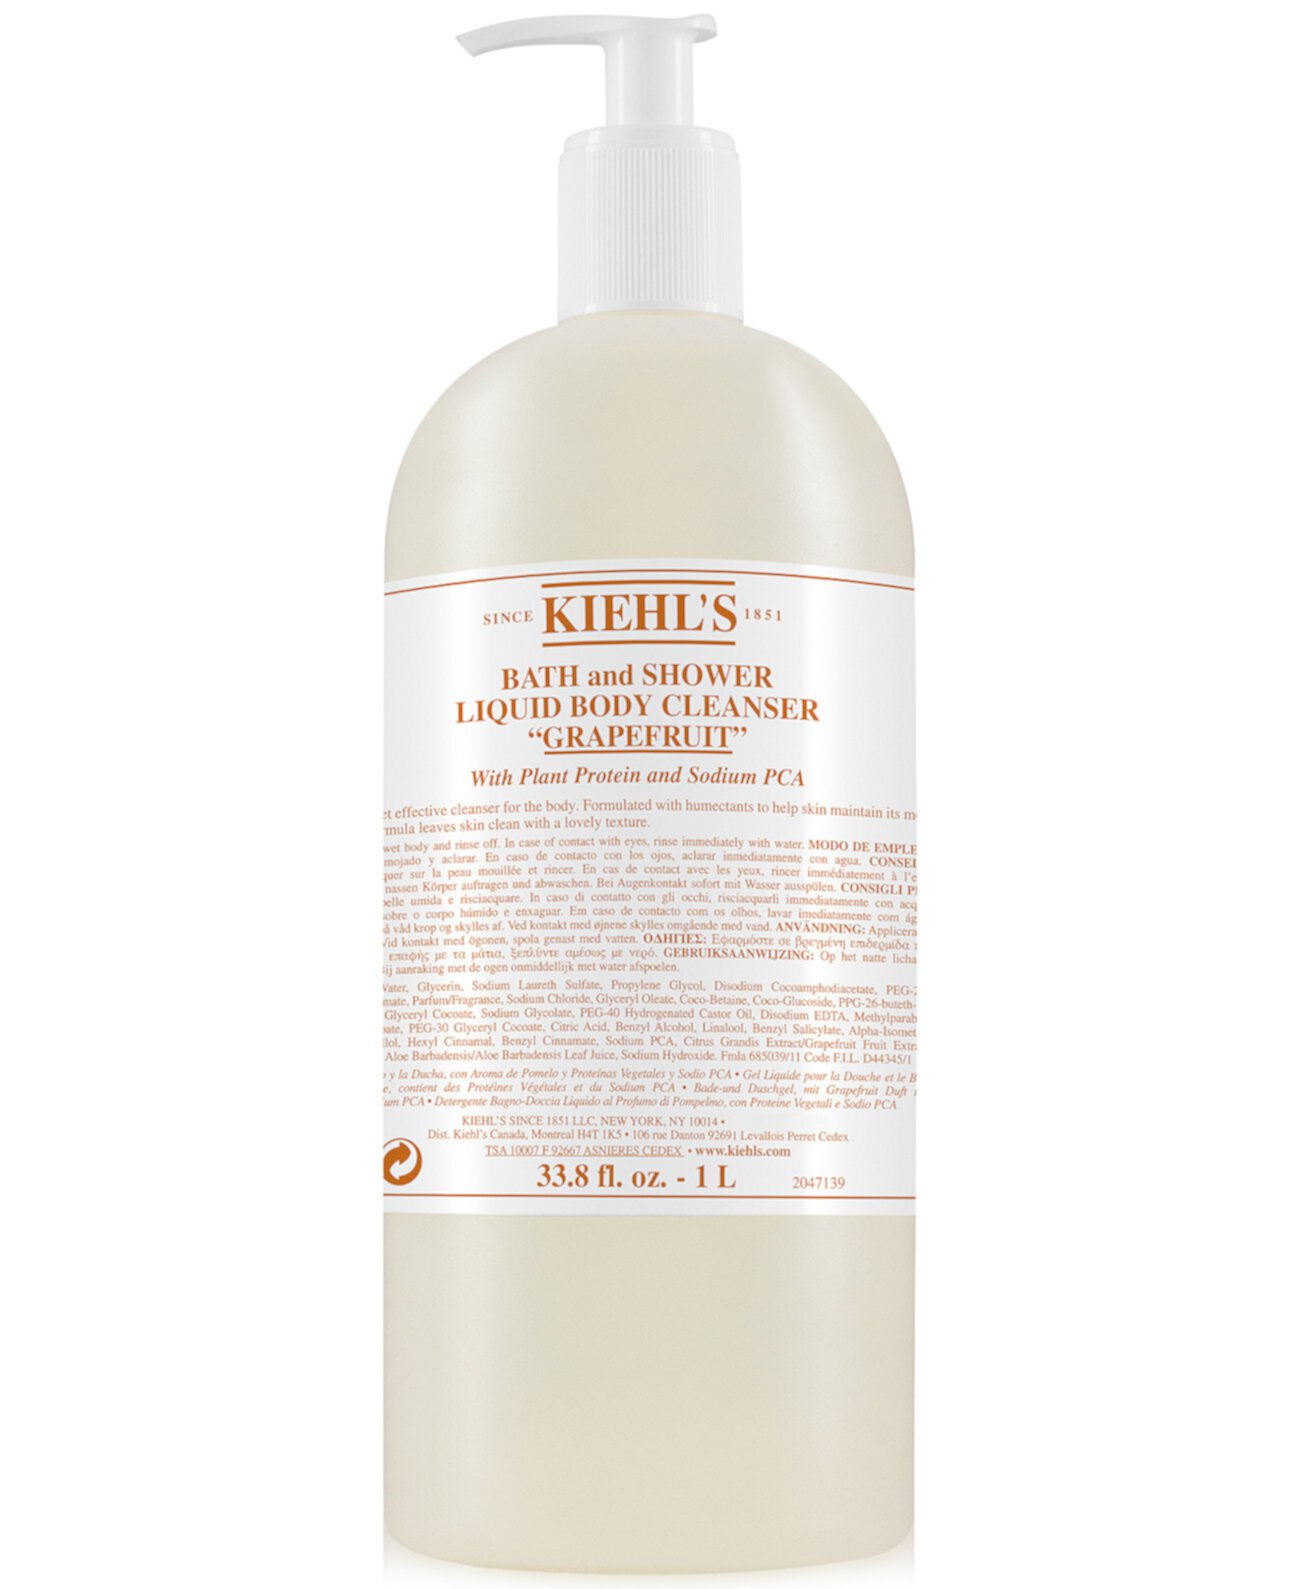 Жидкое очищающее средство для ванны и душа - Грейпфрут, 33,8 жид. унция Kiehl's Since 1851